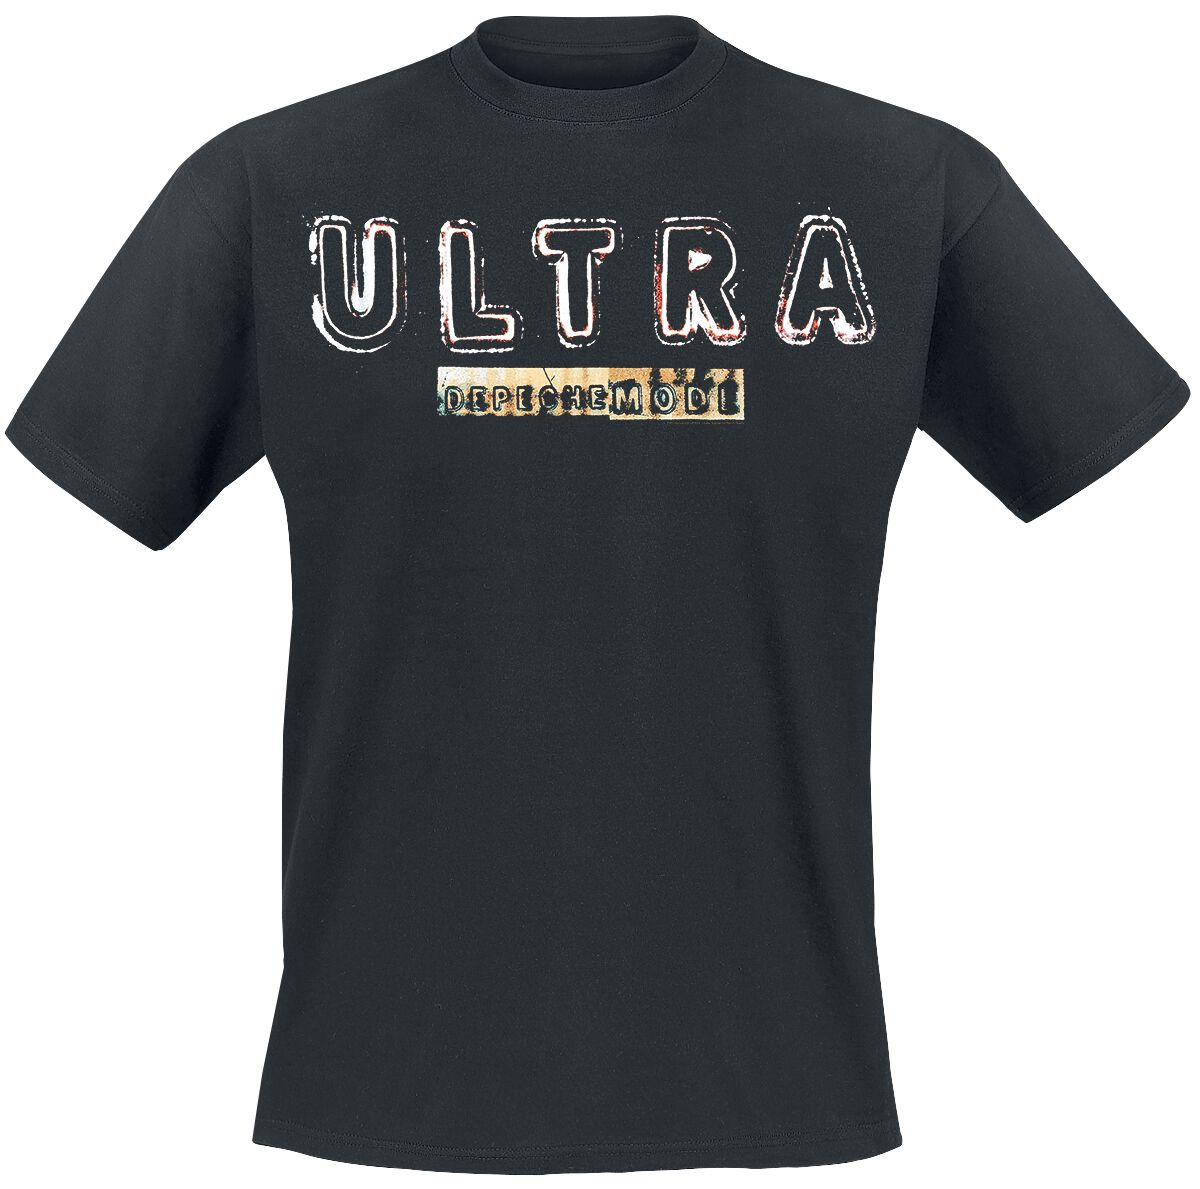 Depeche Mode T-Shirt - Ultra - S bis 4XL - für Männer - Größe S - schwarz  - Lizenziertes Merchandise!